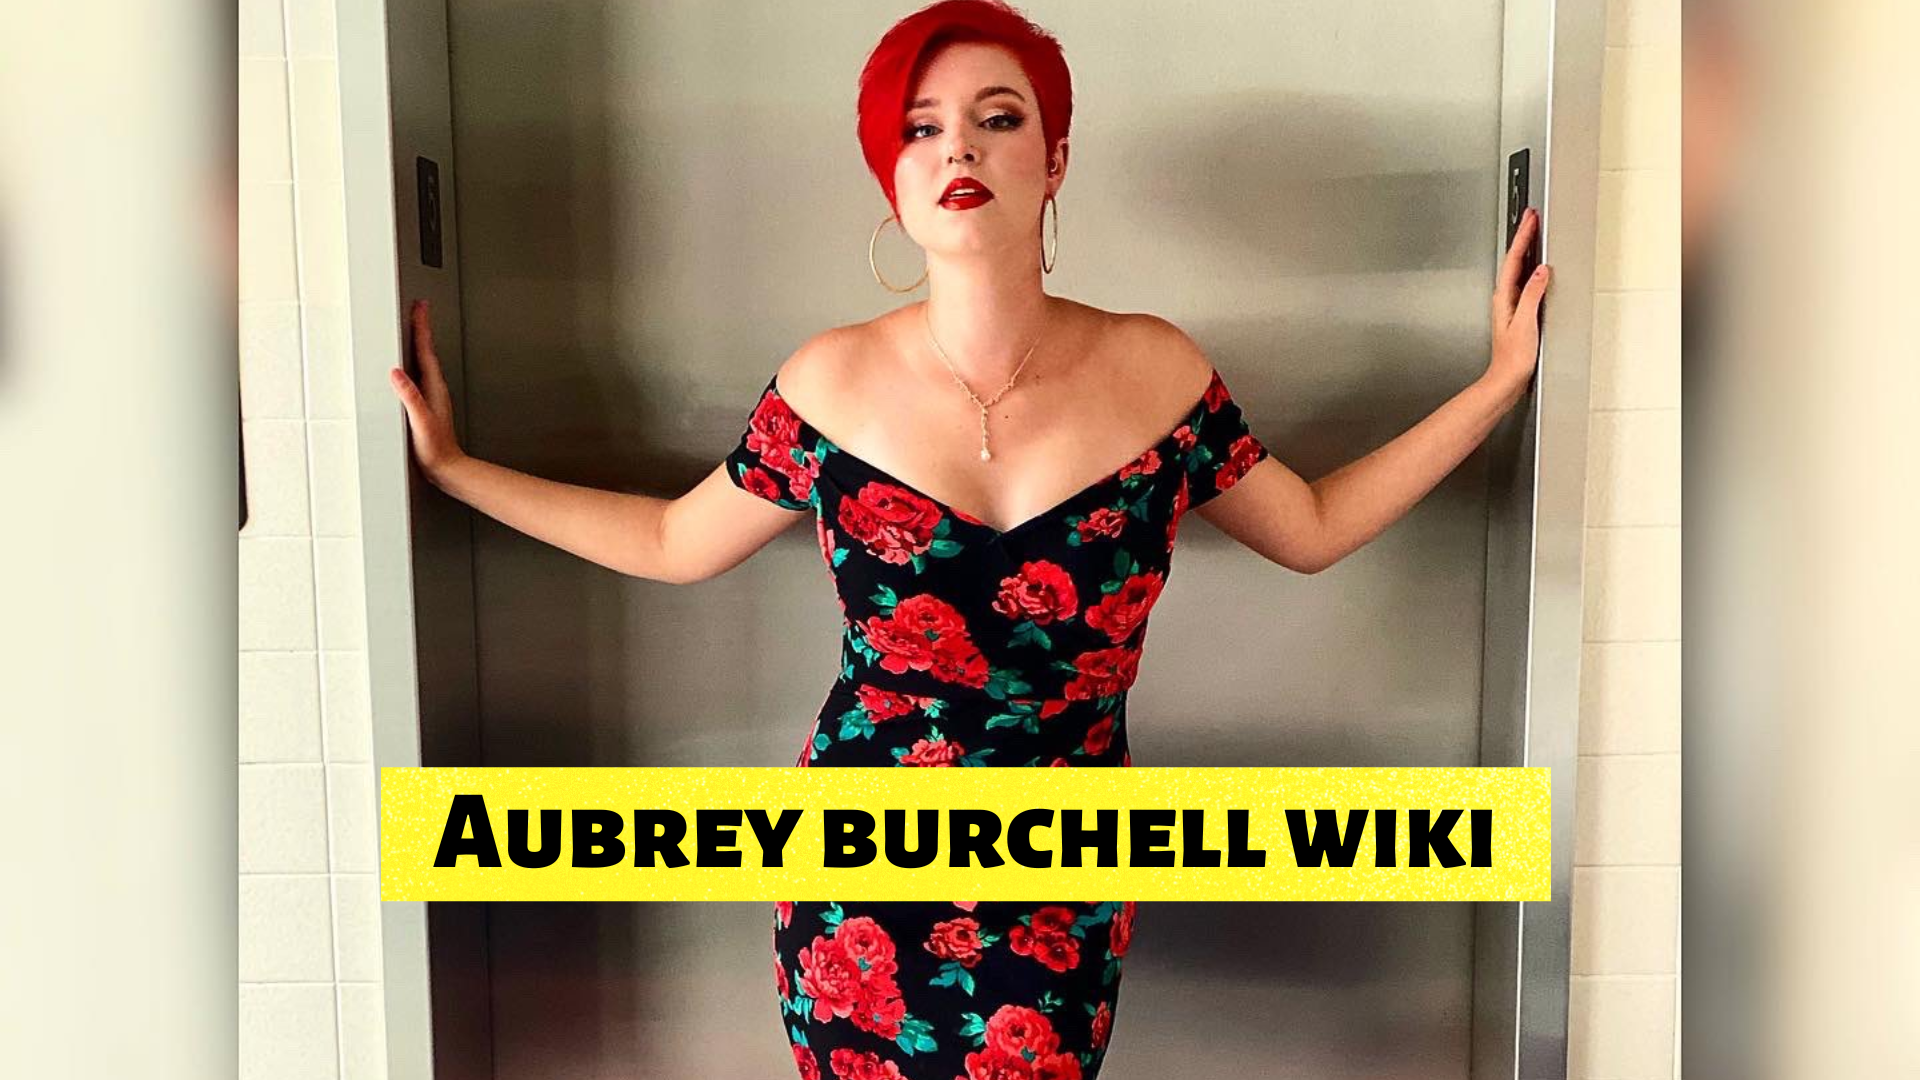 Aubrey burchell wiki